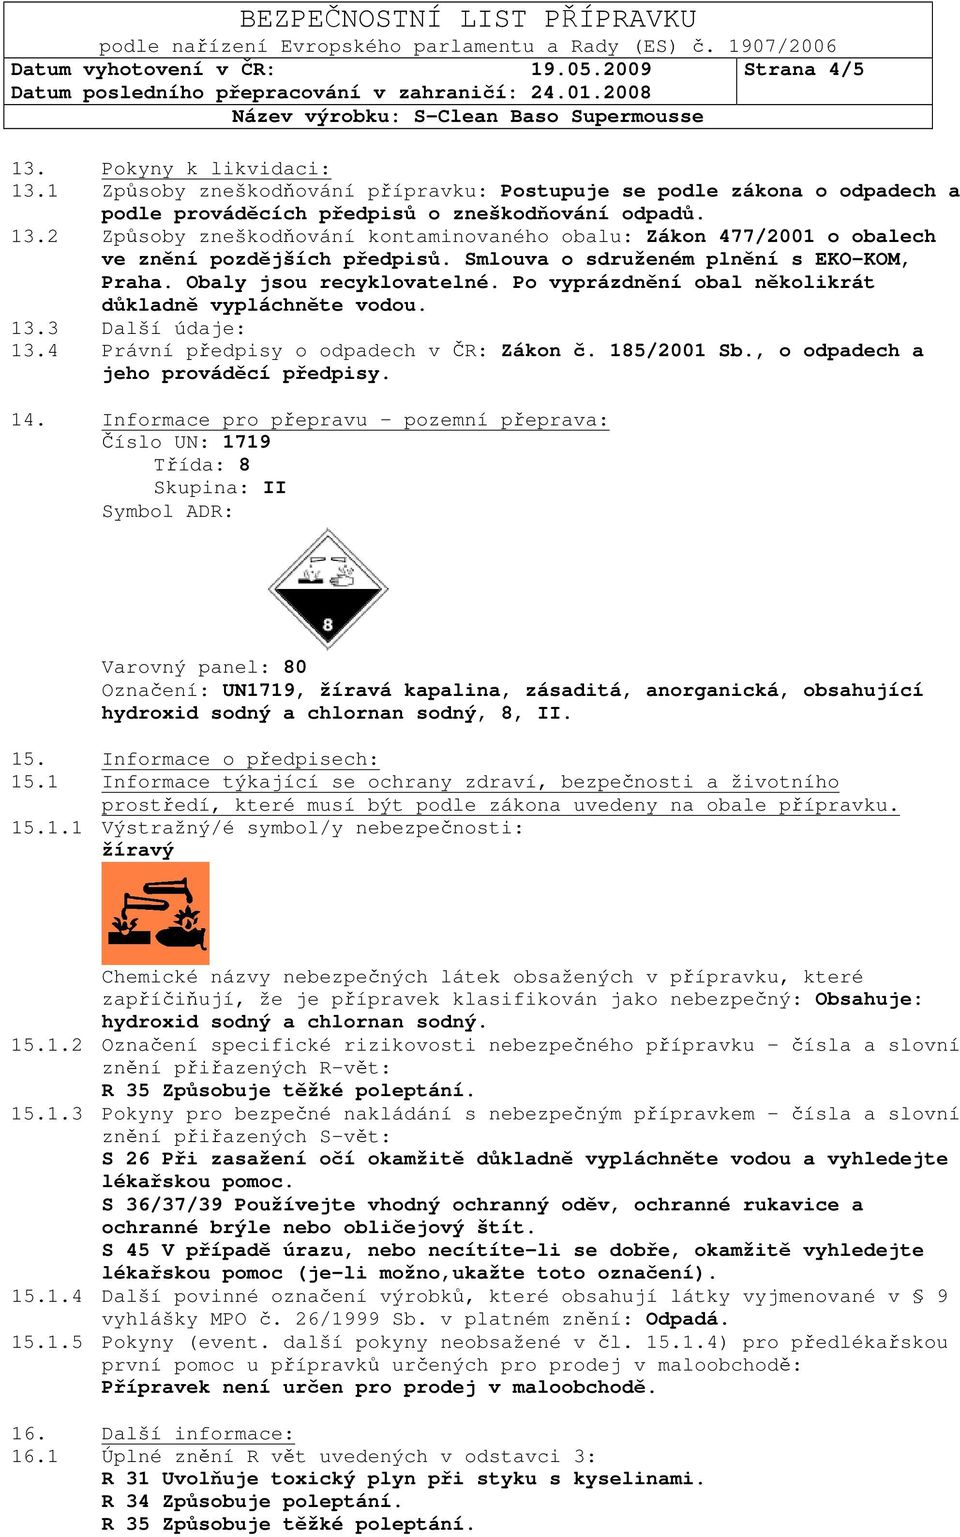 185/2001 Sb., o odpadech a jeho prováděcí předpisy. 14.